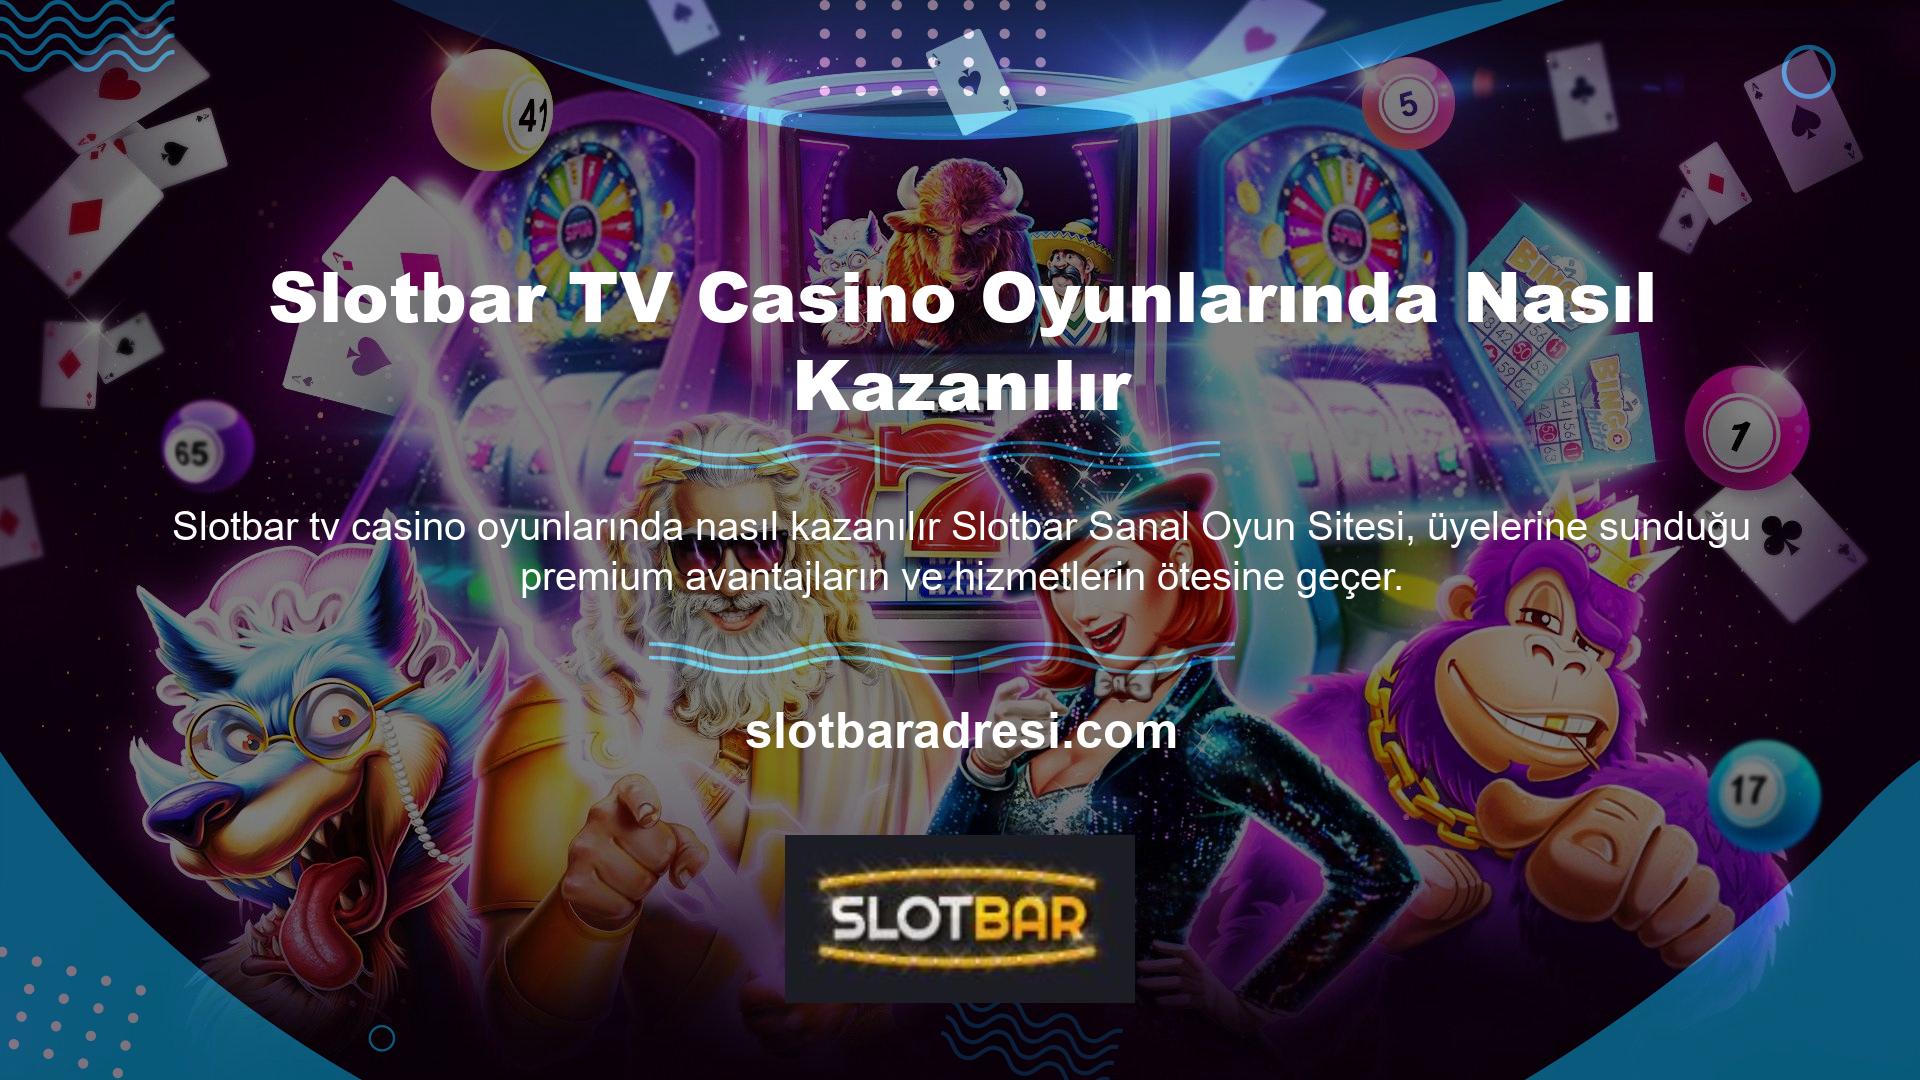 Slotbar TV Nasıl Kazanılır Casino Oyunları TV, kullanıcıların izlemek istediği çeşitli oyunları canlı izleyerek oyun deneyiminizi en üst düzeye çıkarmanıza olanak tanır